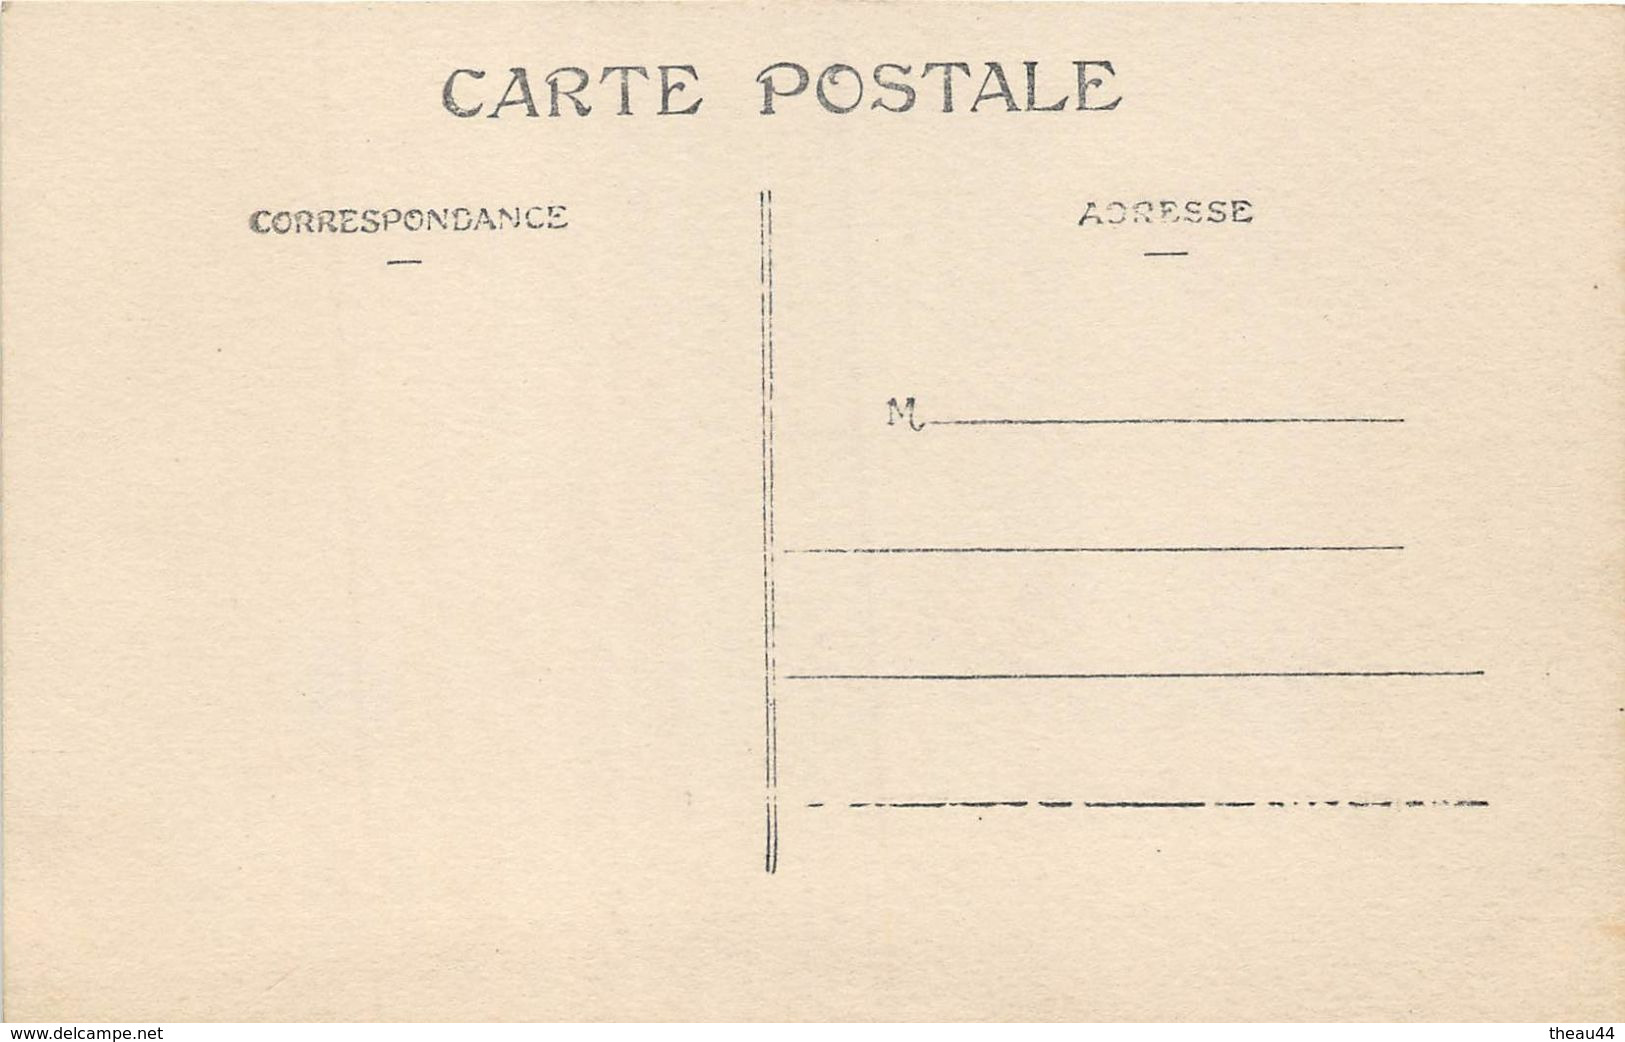 ITALIE - ROME - Lot de 10 Cartes - Béatification de Jeanne D'ARC des 18 et 19 Avril 1909 - PIE X - Religion